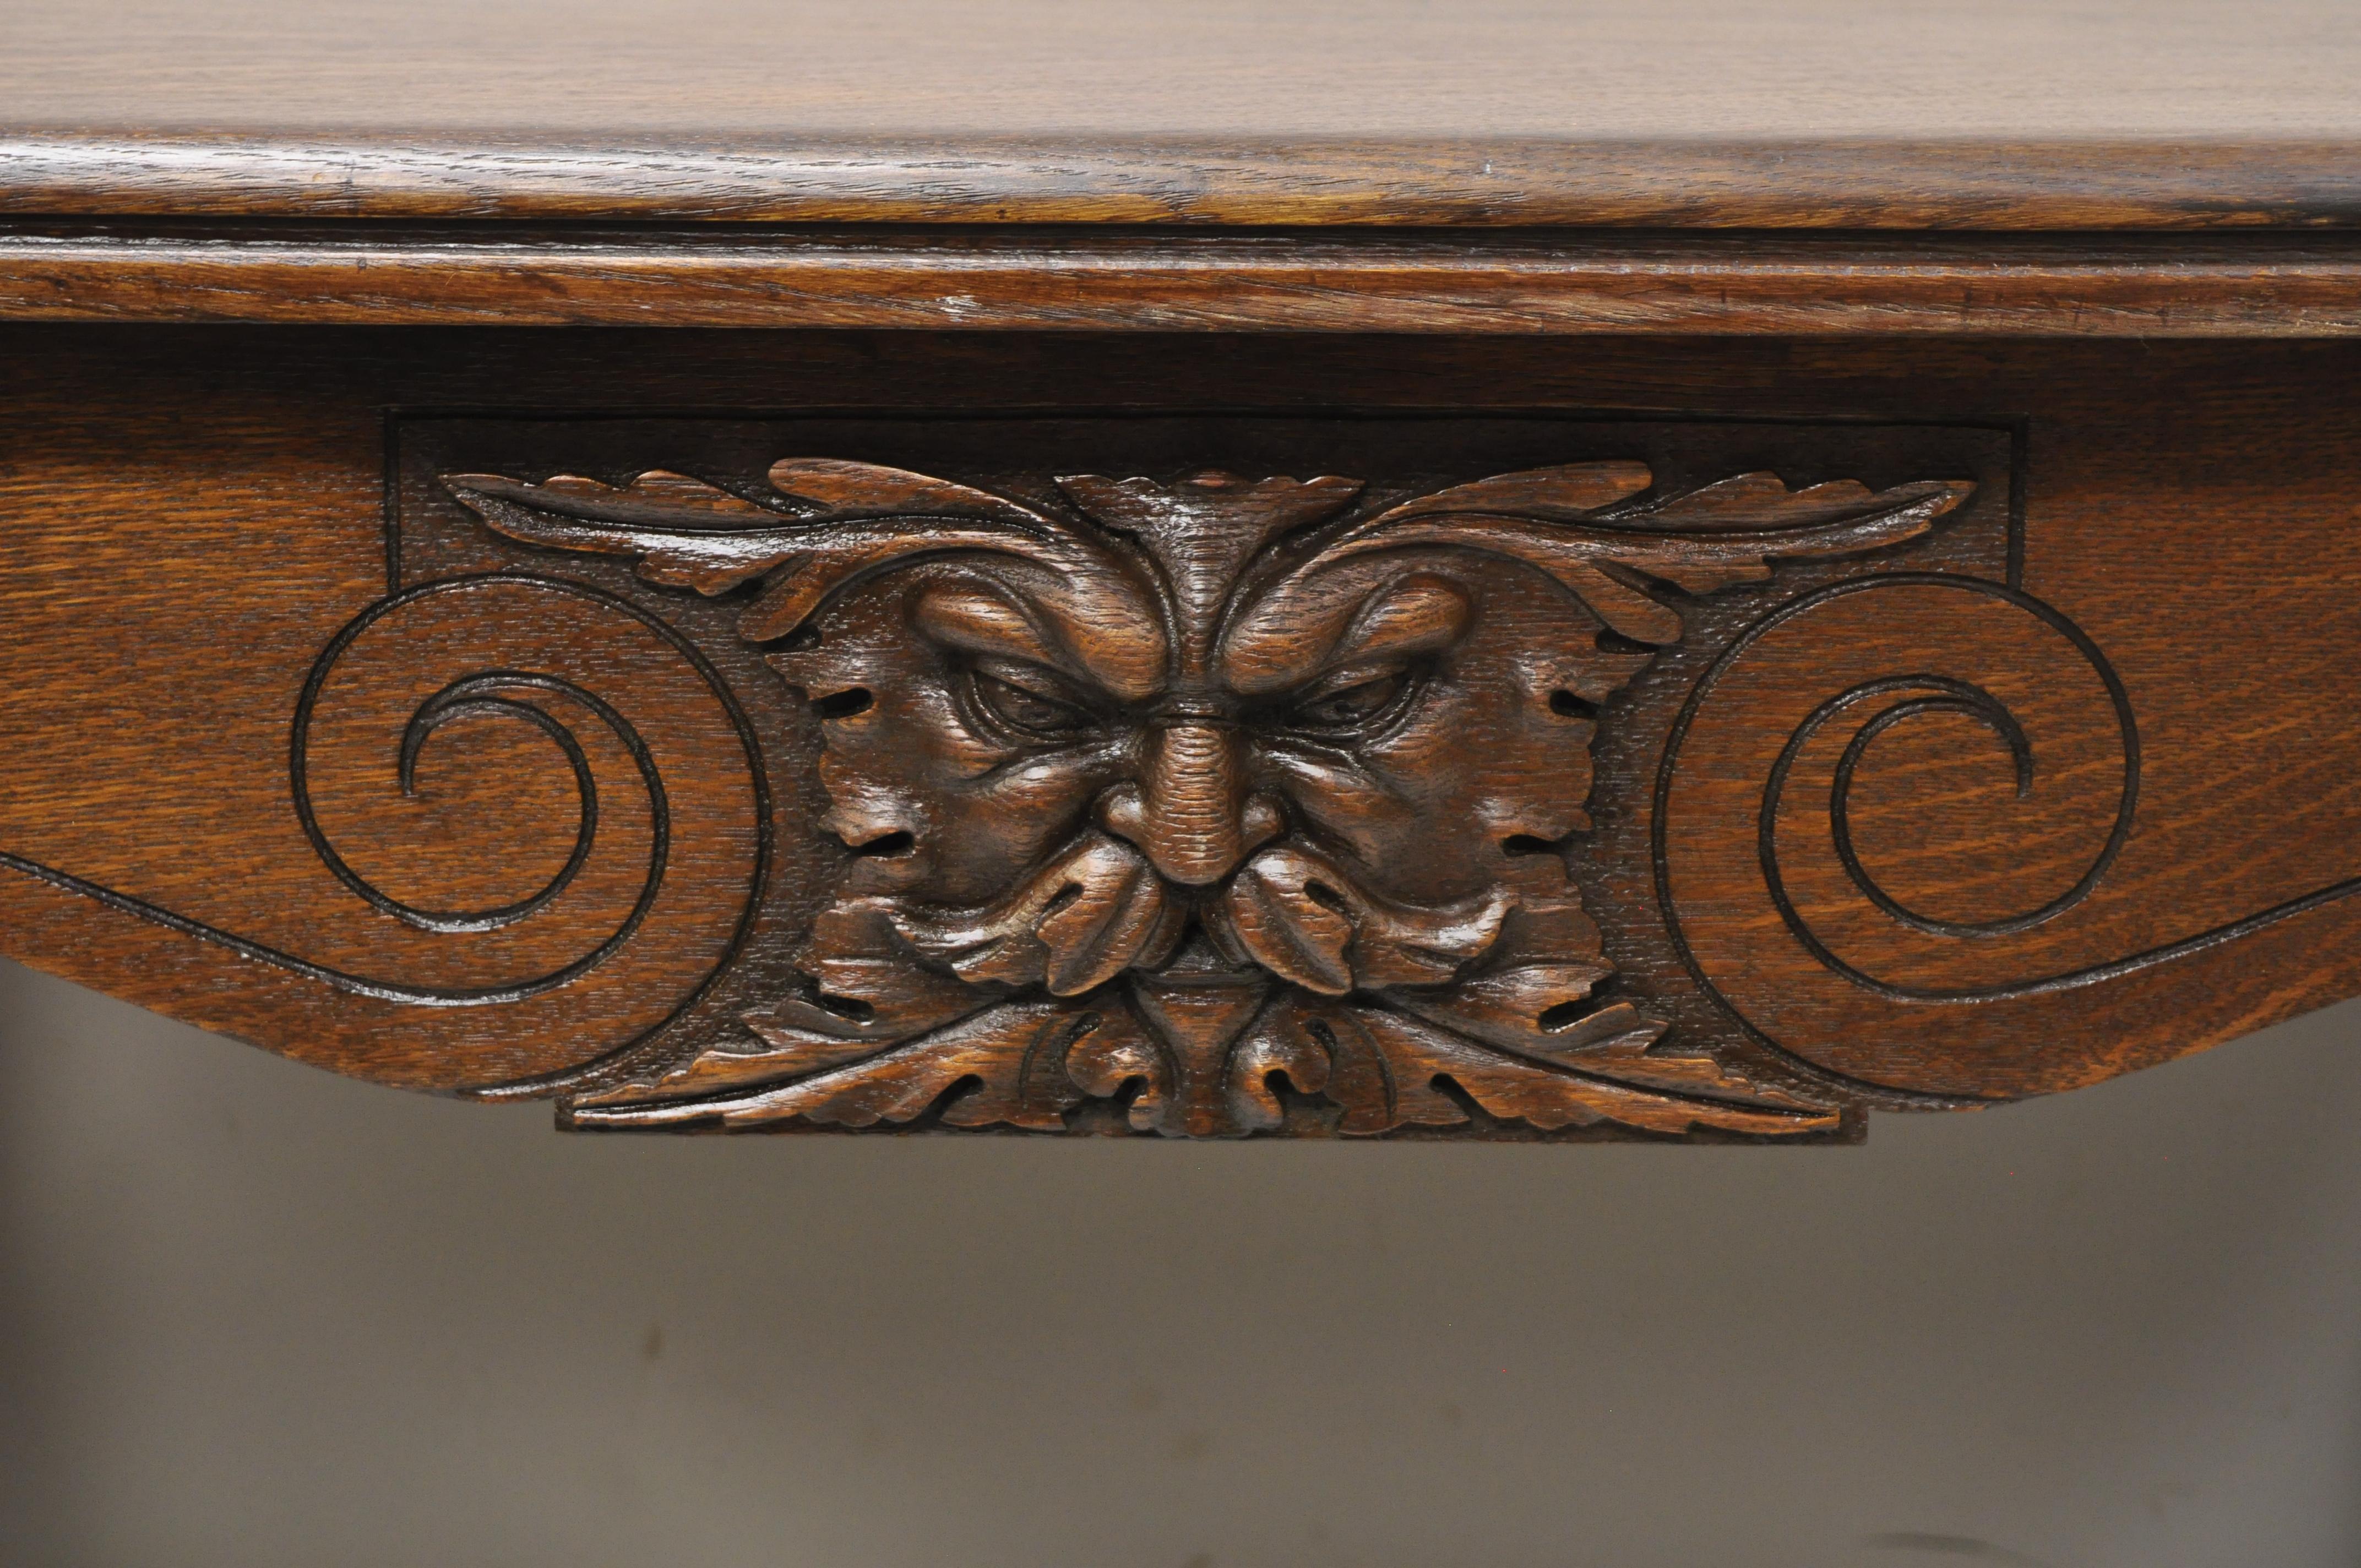 Ancienne table bibliothèque de bureau en bois de chêne sculpté Art Nouveau anglais avec un tiroir. Cet article présente des visages de Northwind sculptés à l'avant et à l'arrière, des supports d'angle en laiton, une construction en bois de chêne